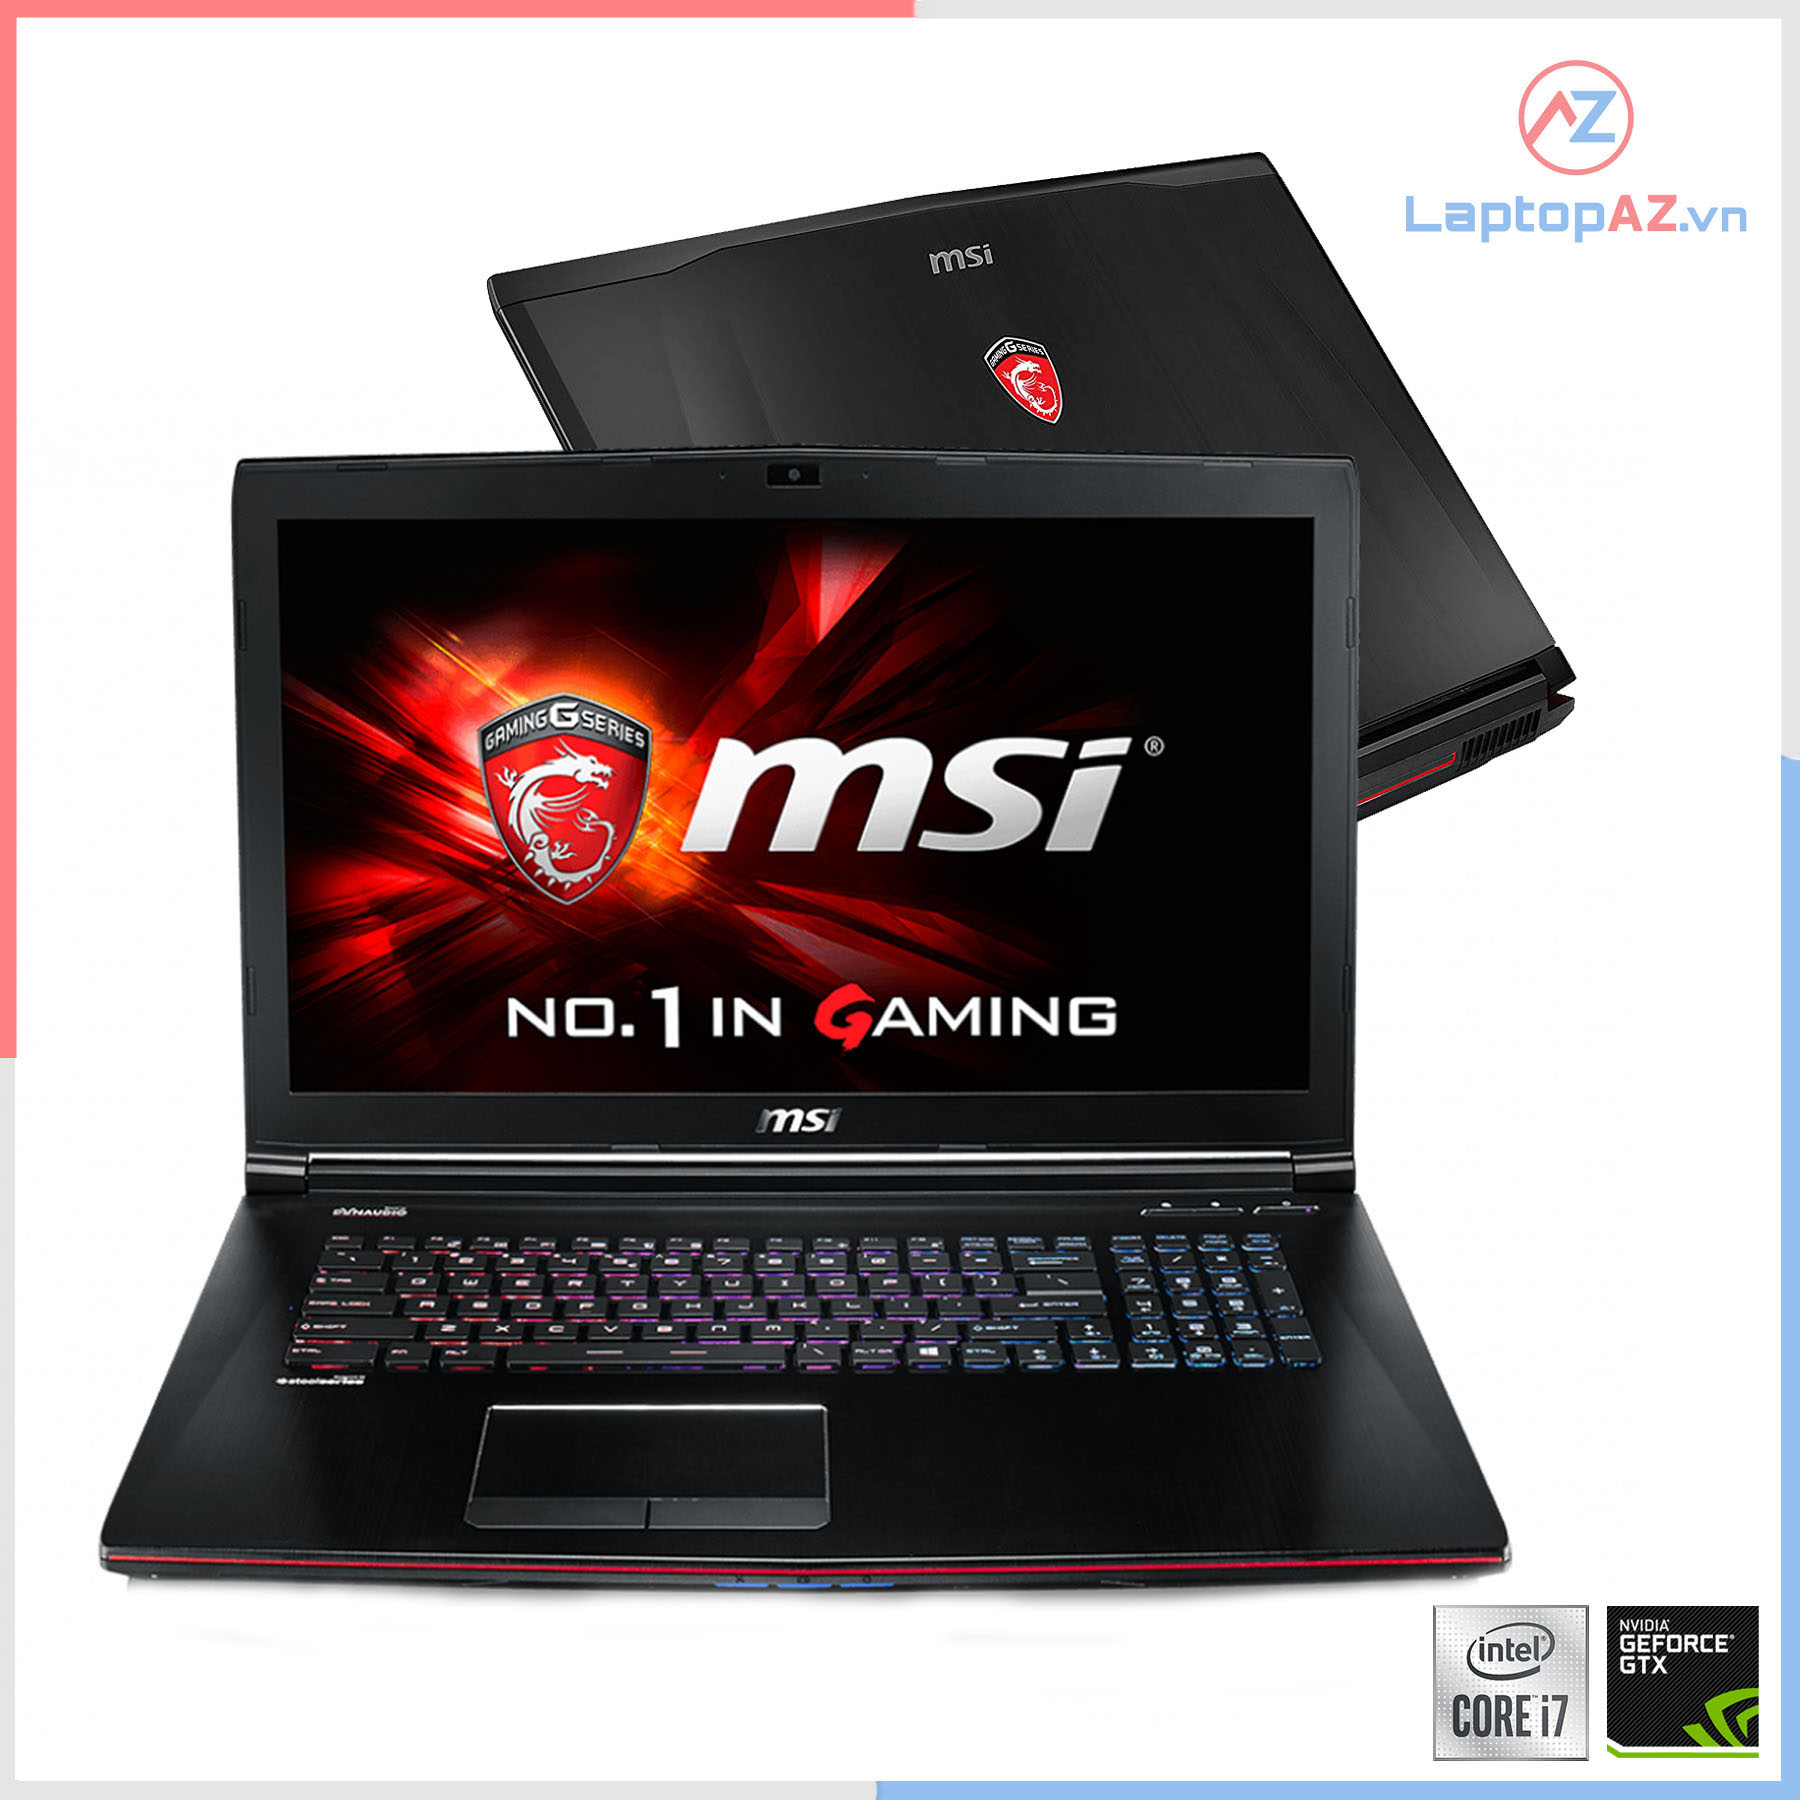 Laptop MSI GE72VR 7RF (Core i7-7700HQ, 8GB, 1TB + 128GB, VGA 3GB NVIDIA GTX 1060, 17.3 inch FHD)